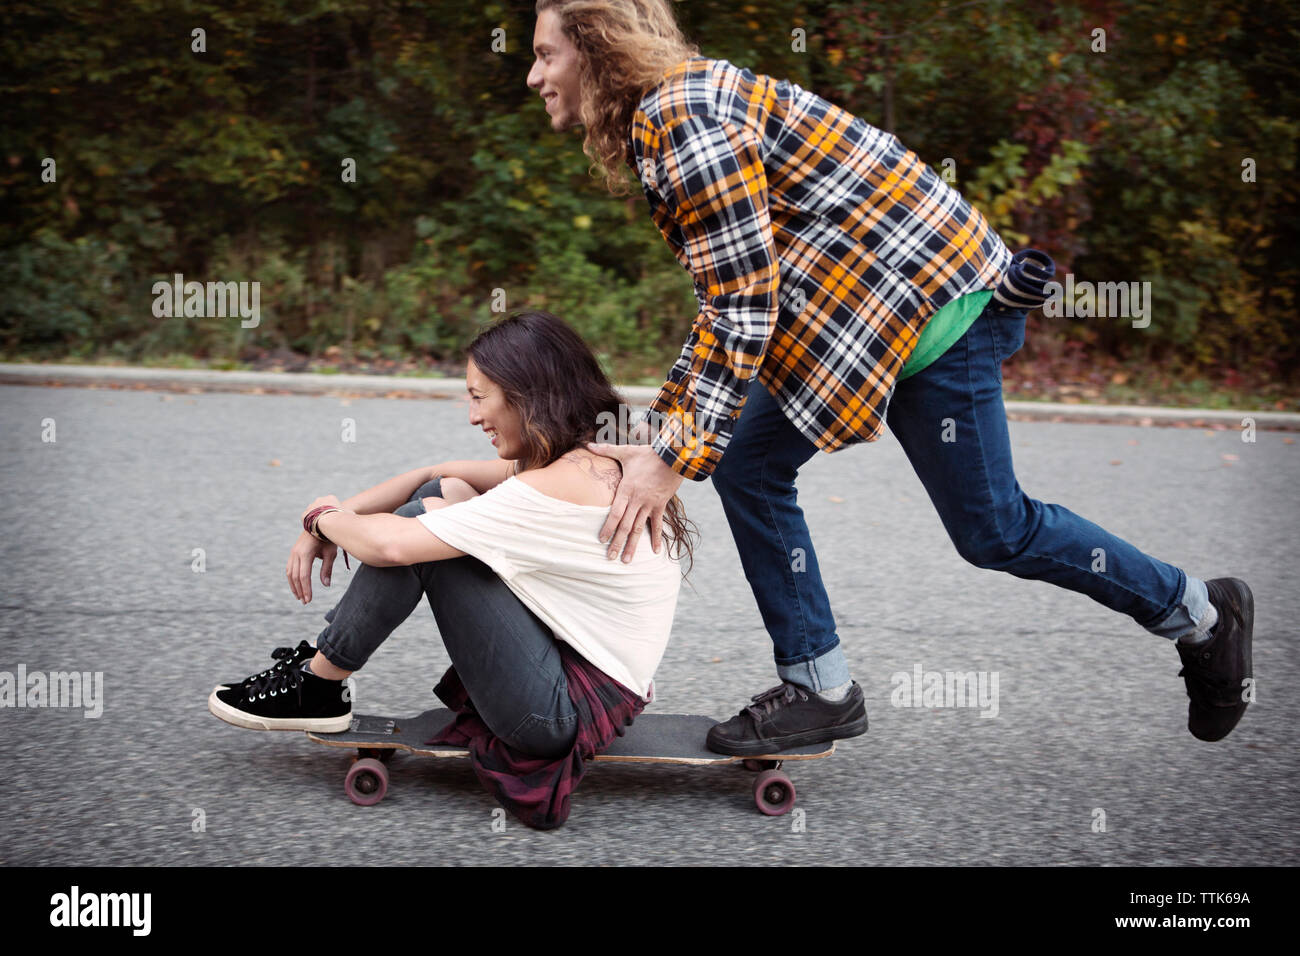 Der Mensch drückt Frau sitzt auf Skateboard auf der Straße Stockfoto